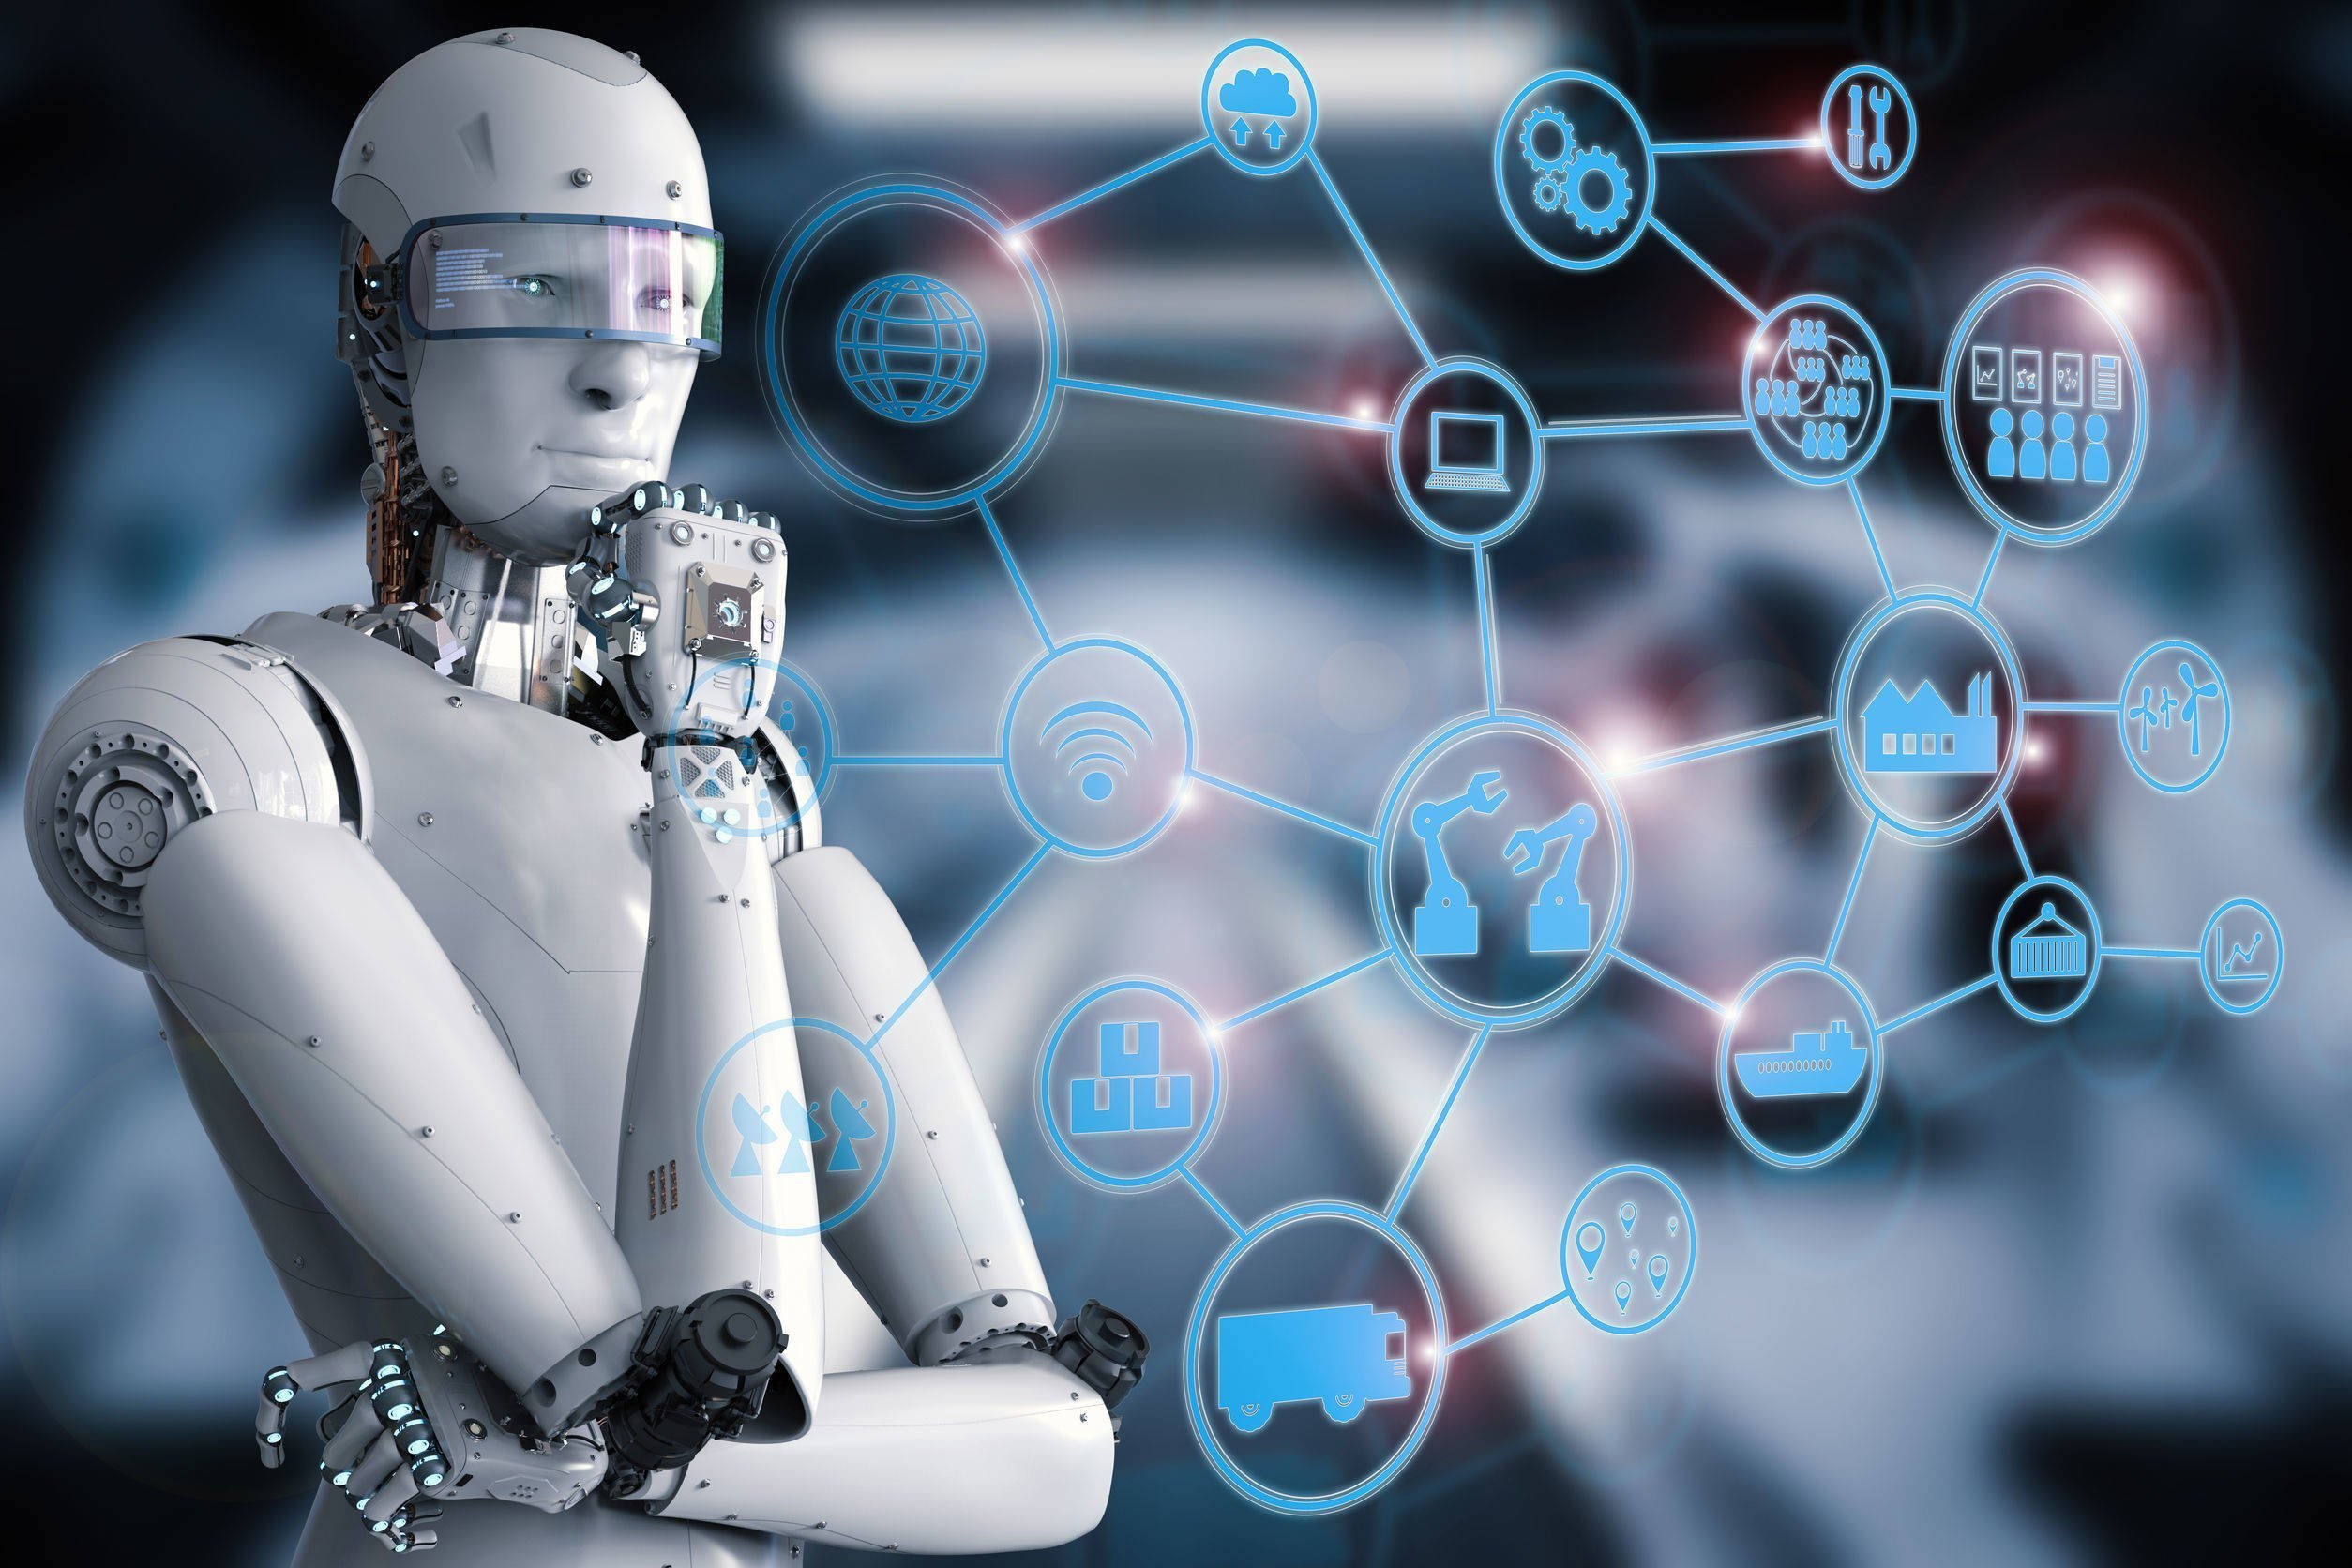  Goldman Sachs spune că inteligenţa artificială generativă ar putea afecta 300 de milioane de locuri de muncă – iată care ar fi acestea